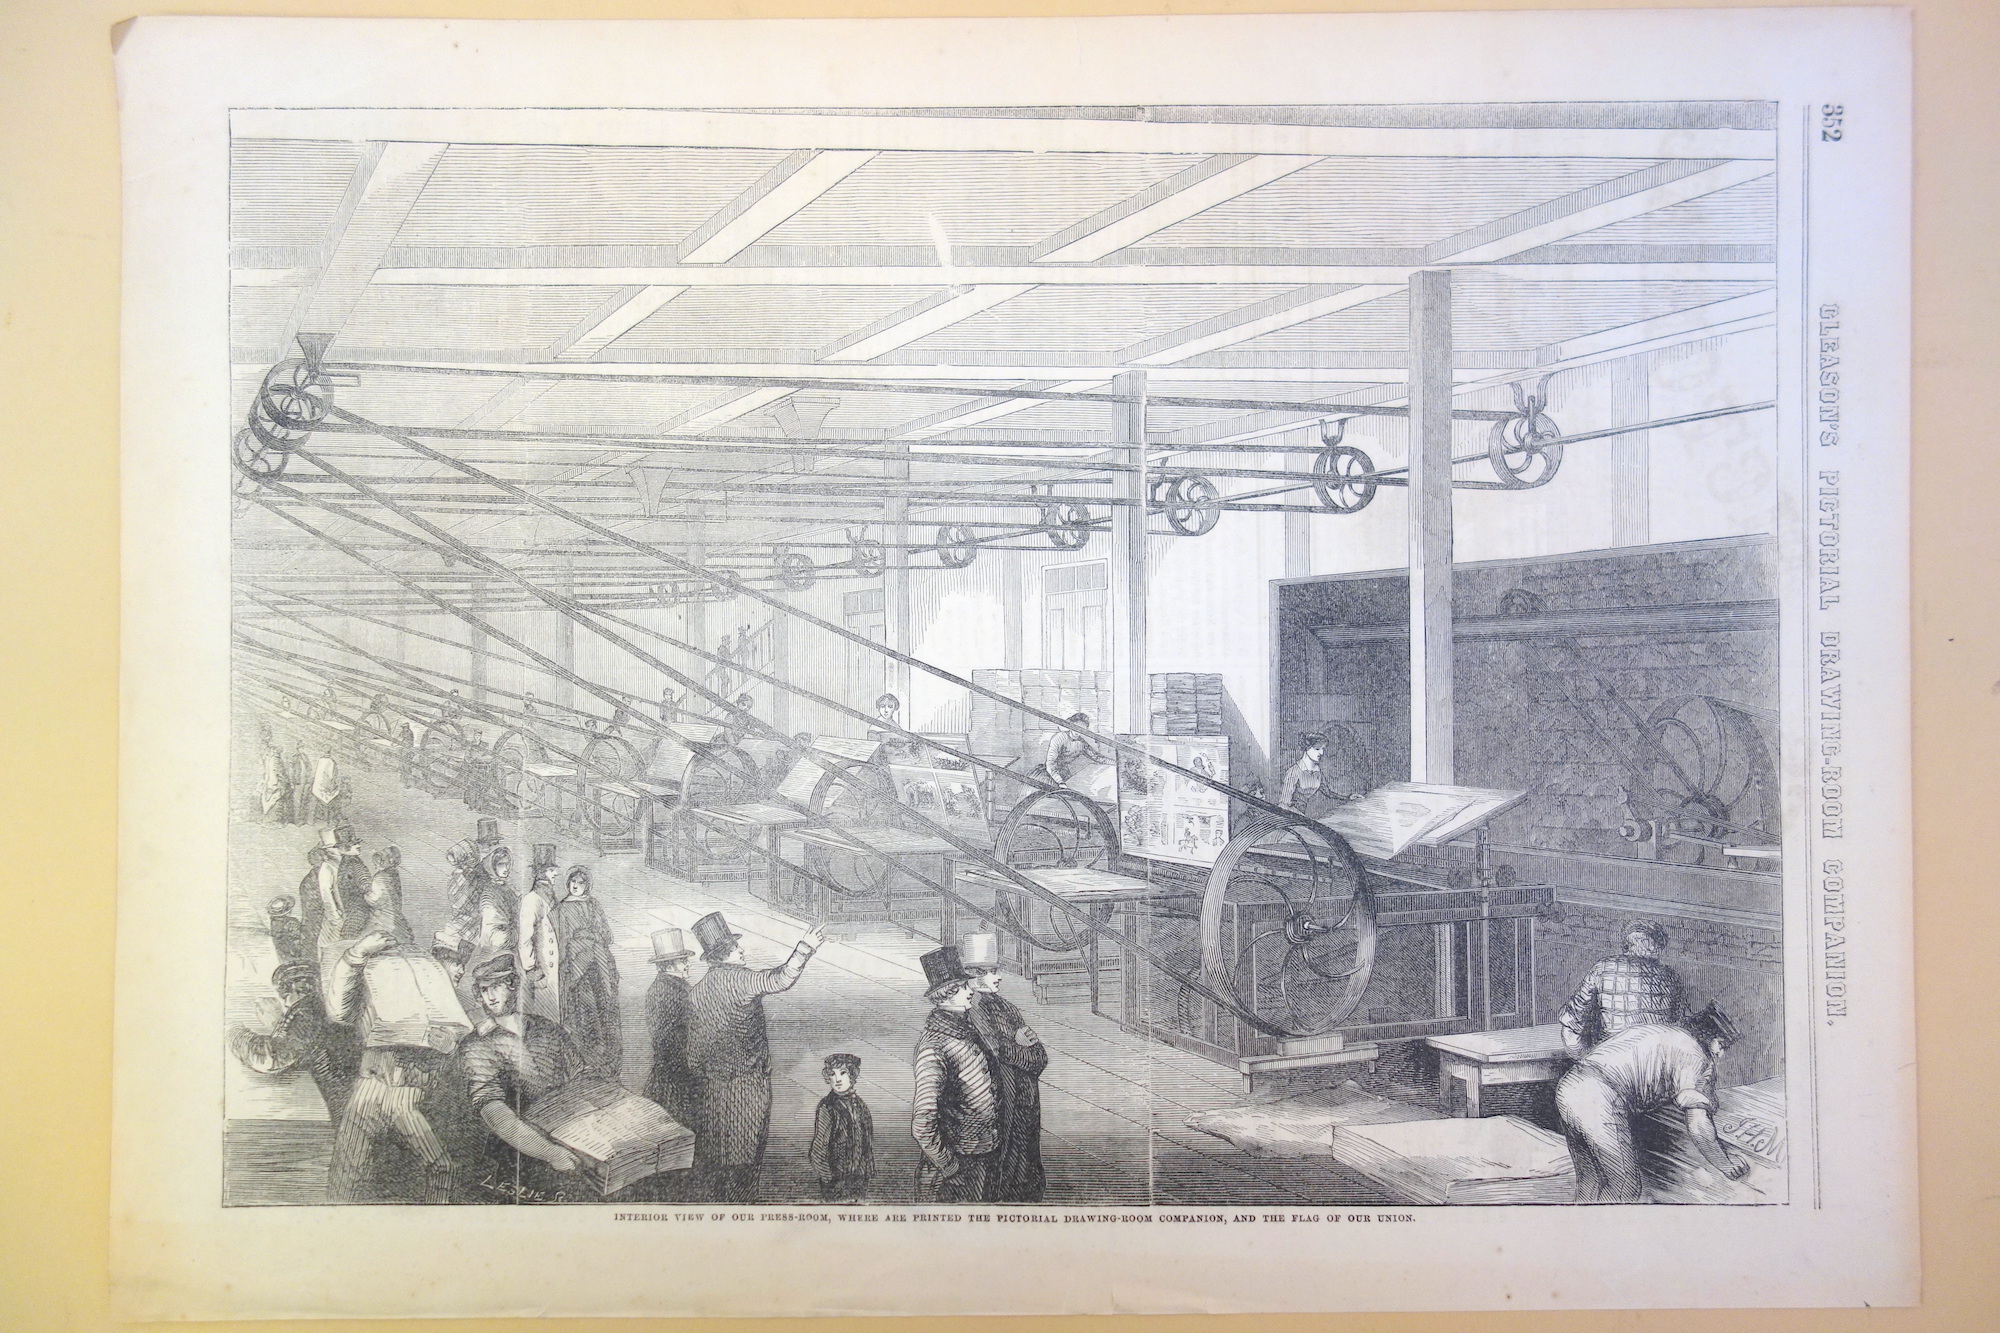 Gleason's magazine steam-powered printing machine room